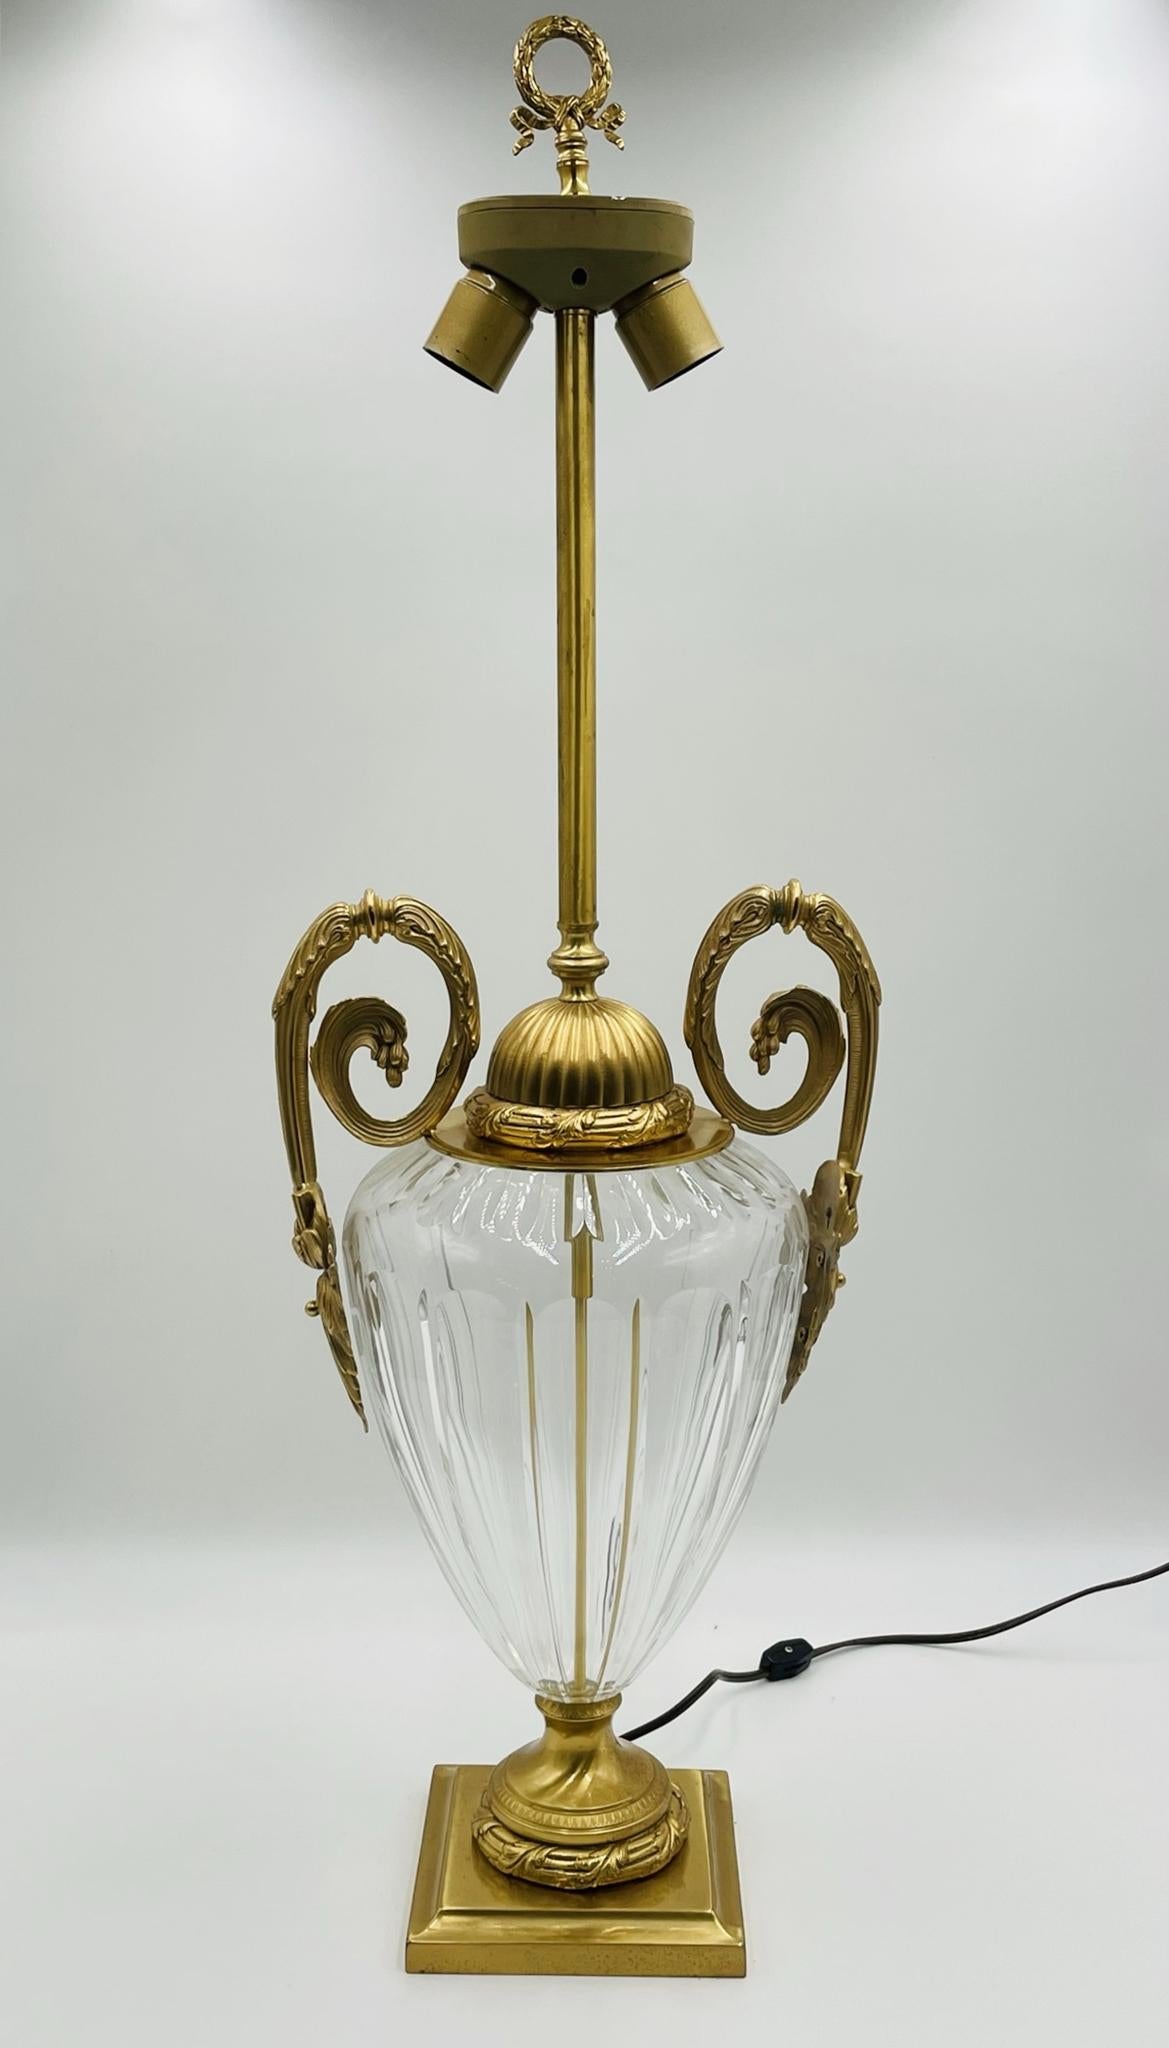 Voici l'étonnante lampe de table des années 1970 en cristal et en bronze, fabriquée en Italie par Leone Alio. Cette lampe exquise arbore un design unique et complexe, avec deux poignées élégantes et une base étonnante qui respire la sophistication